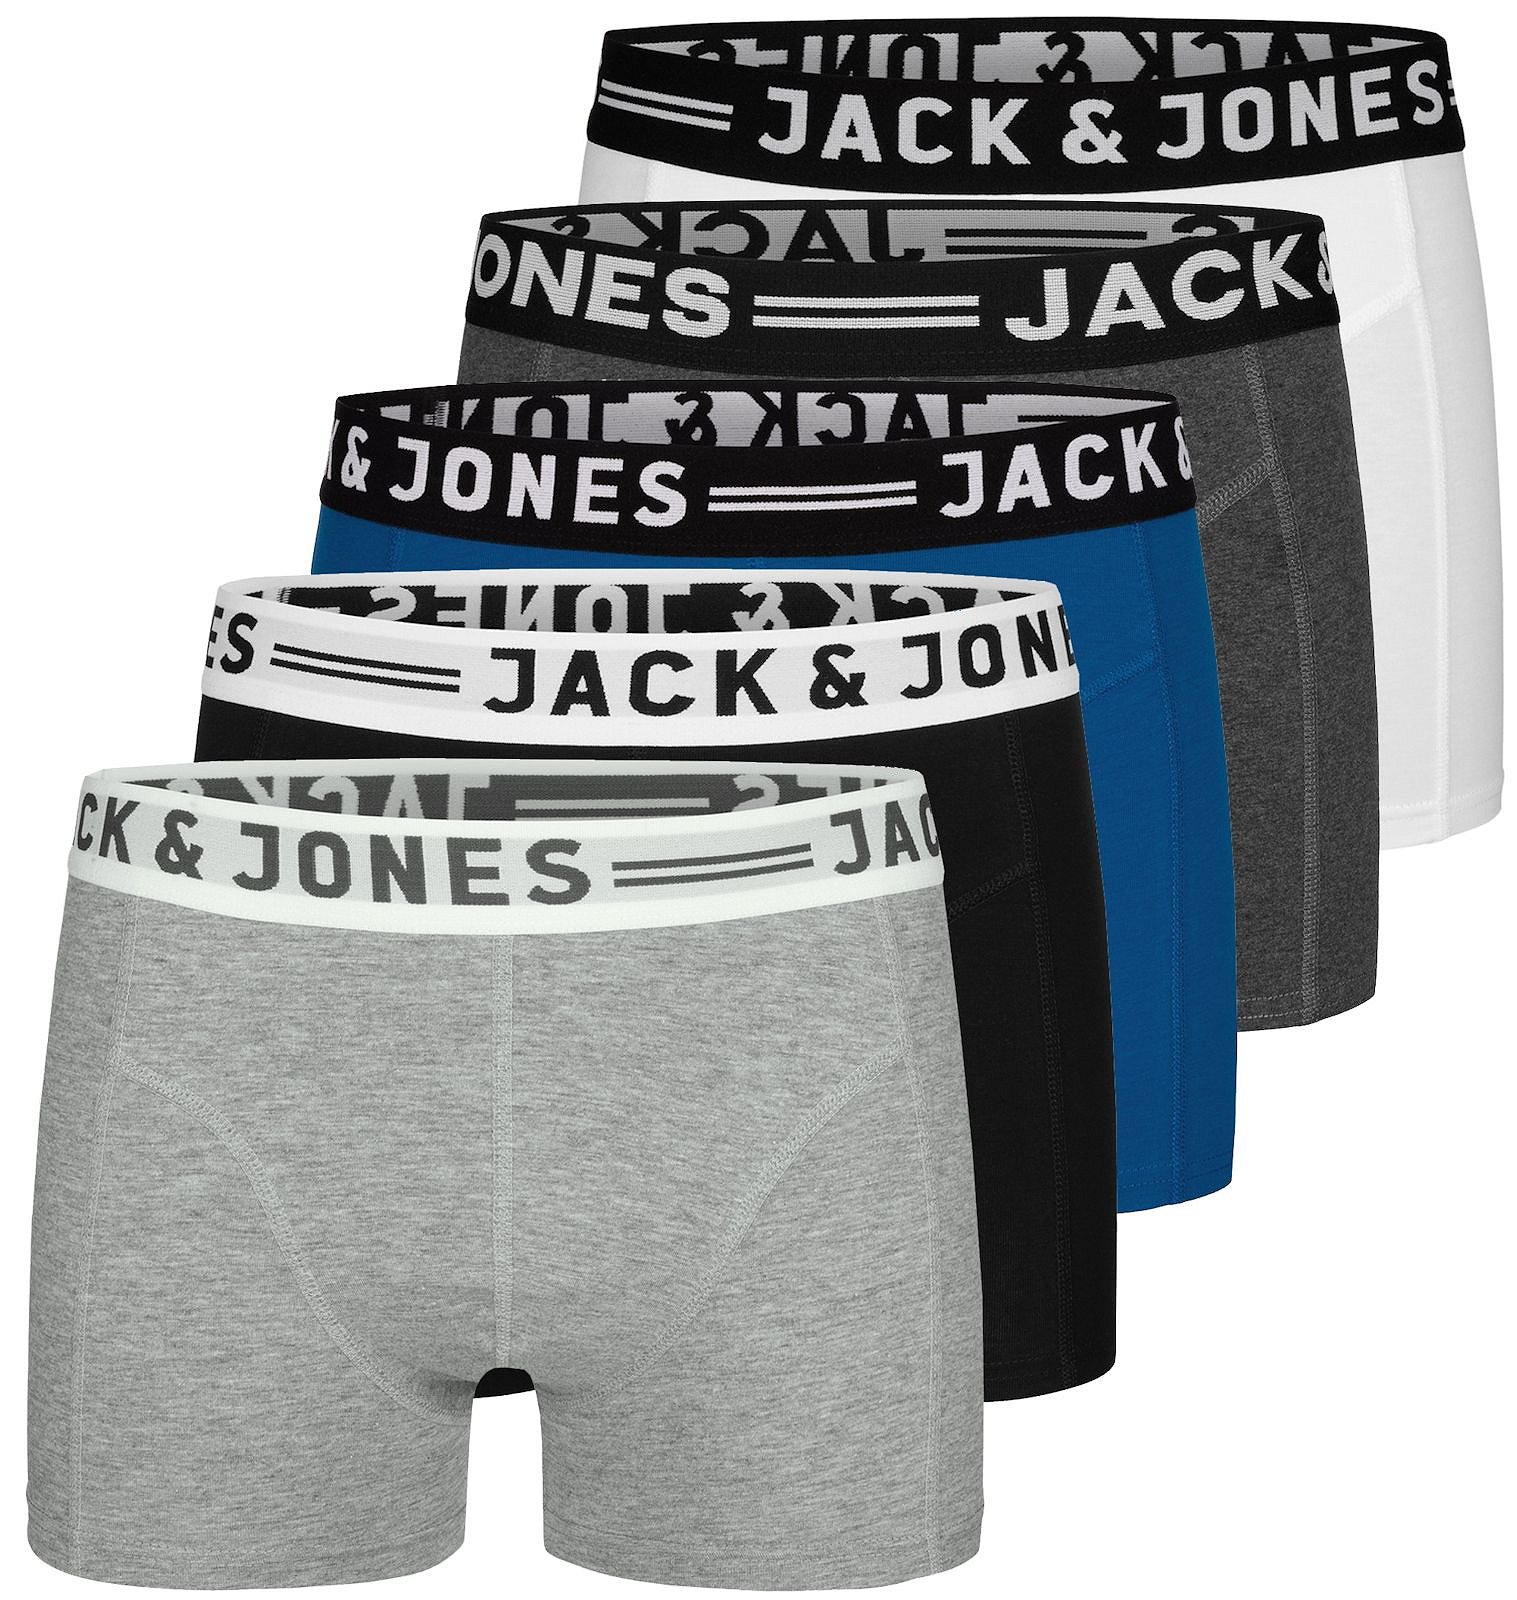 JACK & JONES Herren 5er Pack Boxershorts Mix Unterwäsche Mehrpack 